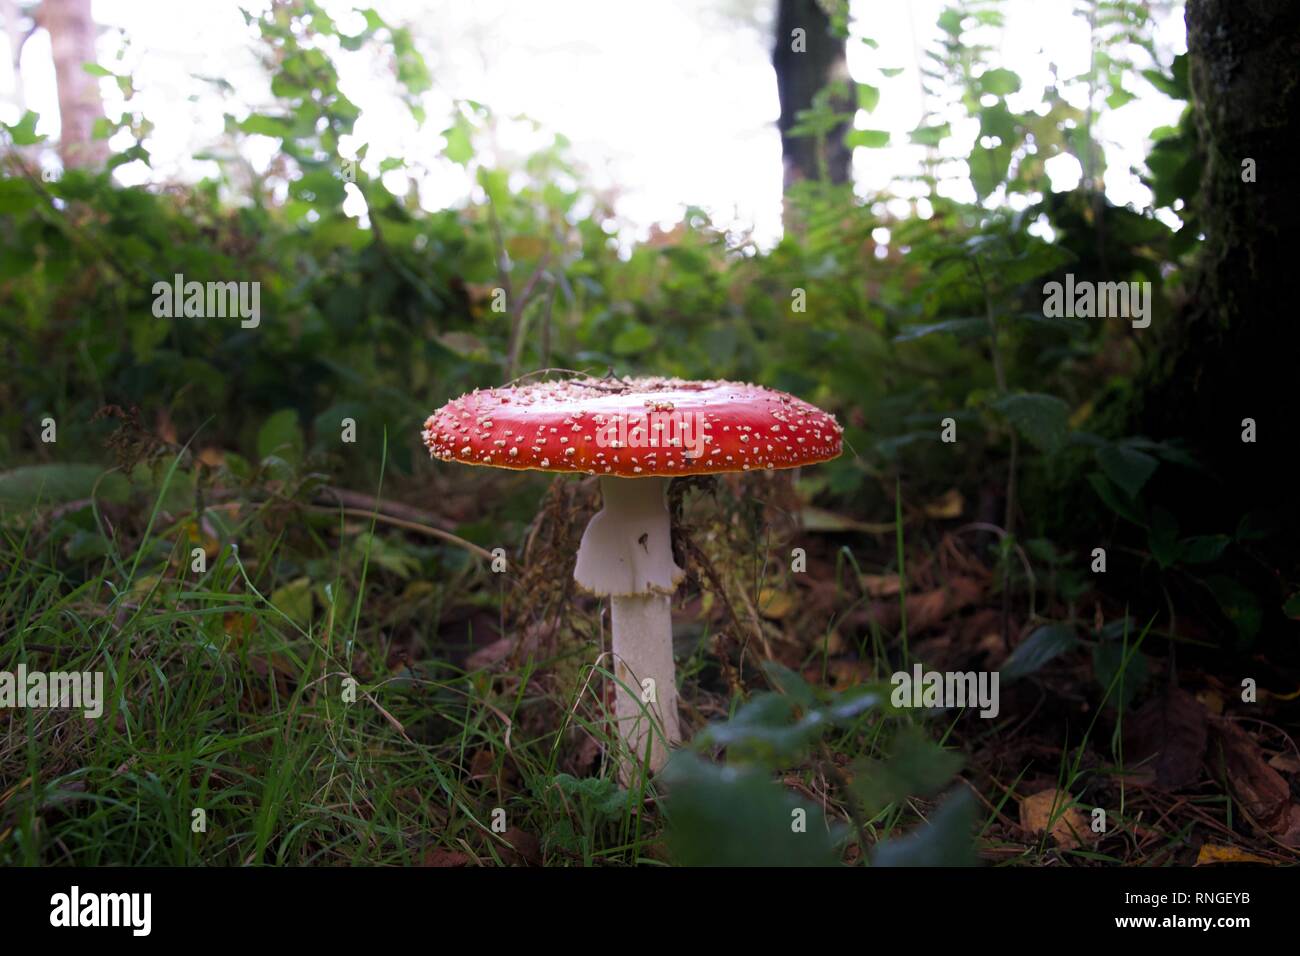 Eine große giftig rot und weiß gefleckte Fliegenpilz (Pilz) unter Gras und Blätter auf dem Boden eines Waldes oder Wald Stockfoto